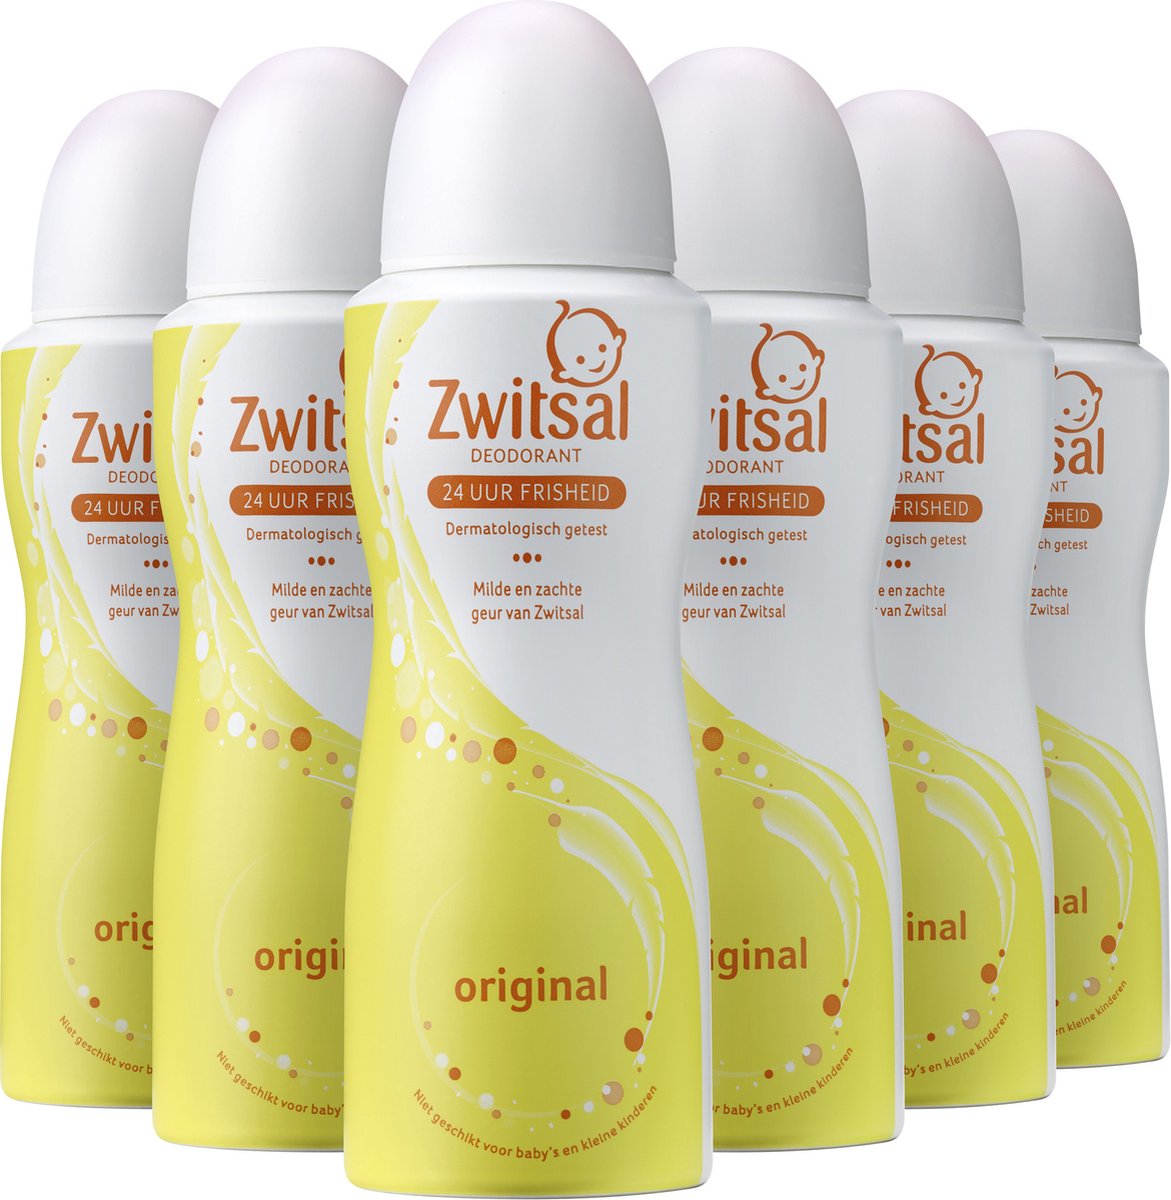 Zwitsal Original Deodorant - 6 x 100 ml - Voordeelverpakking | bol.com